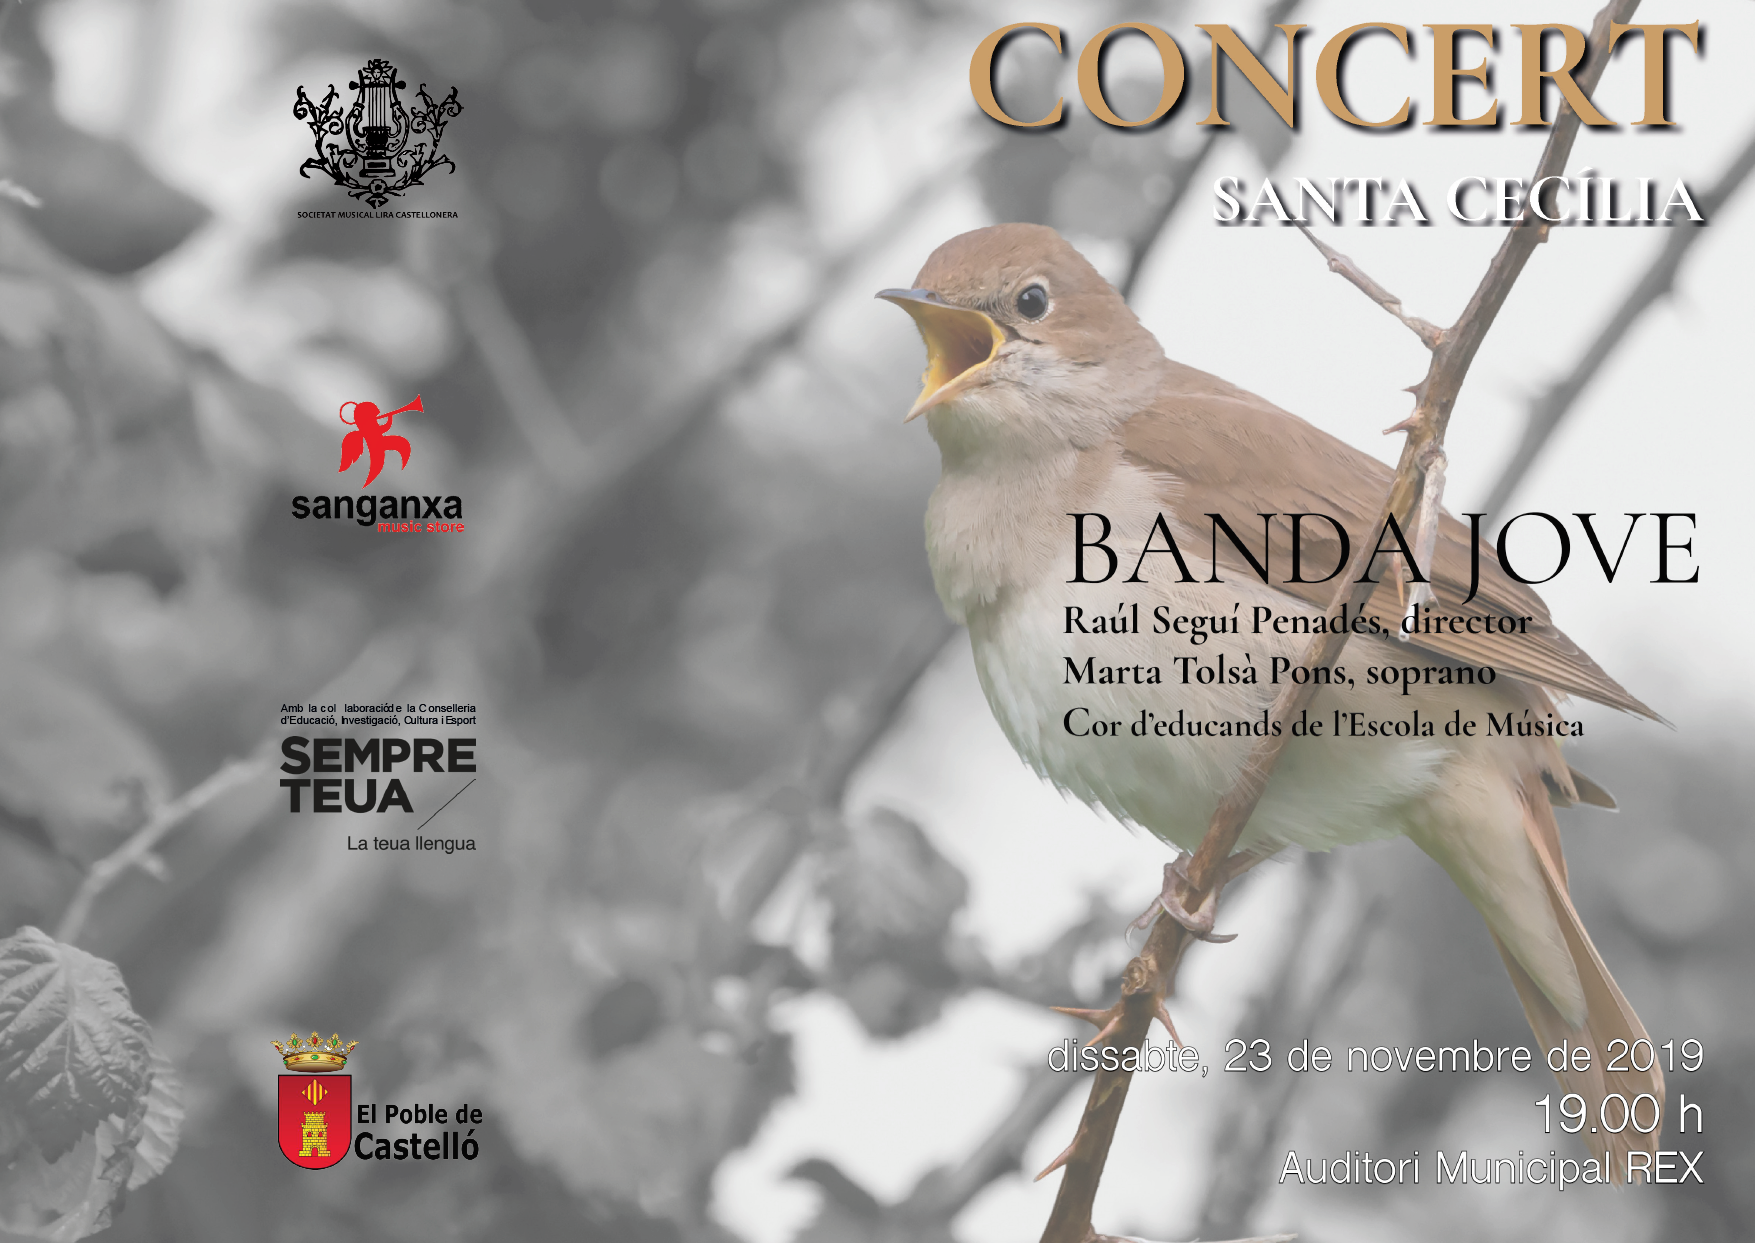 Concert Santa Cecilia 2019 Banda Jove L.C.